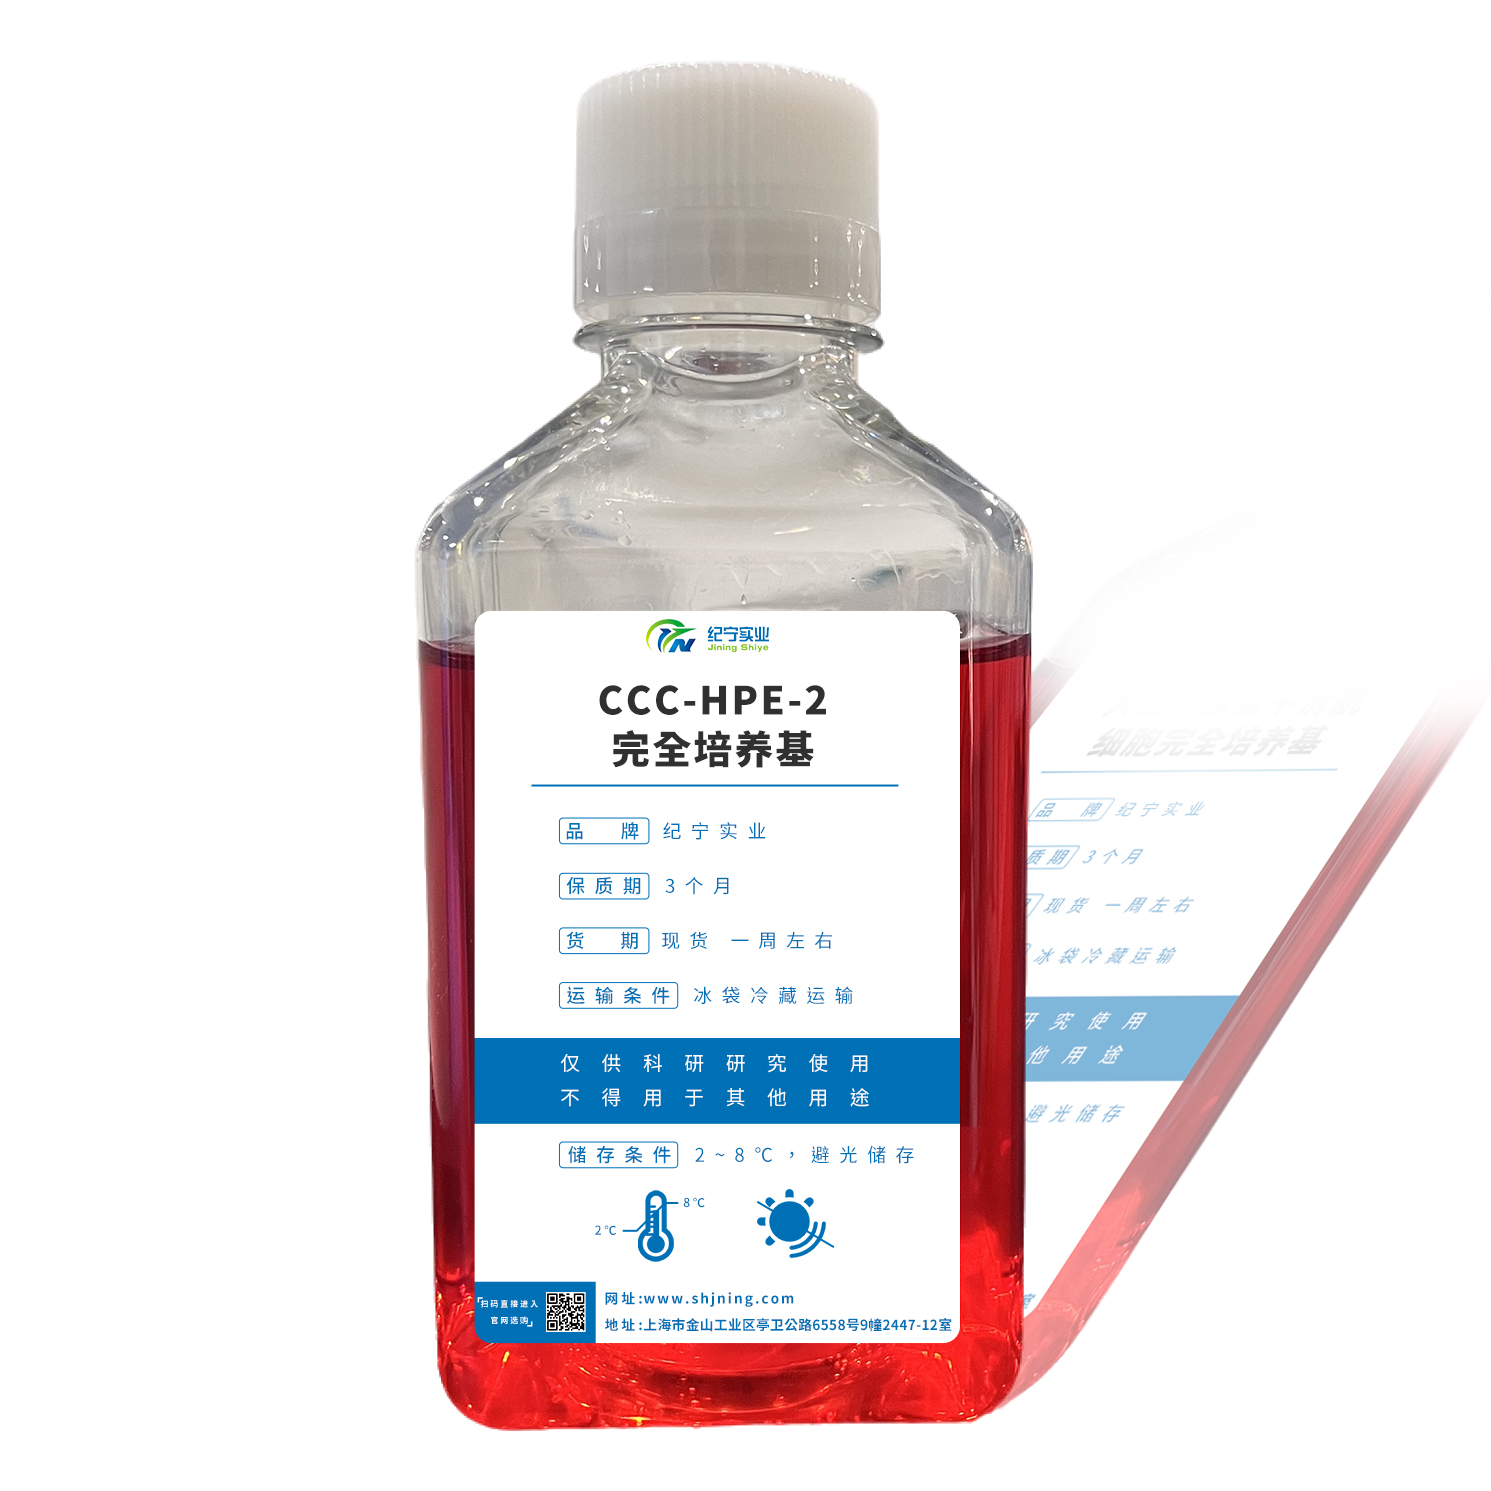 CCC-HPE-2完全培养基